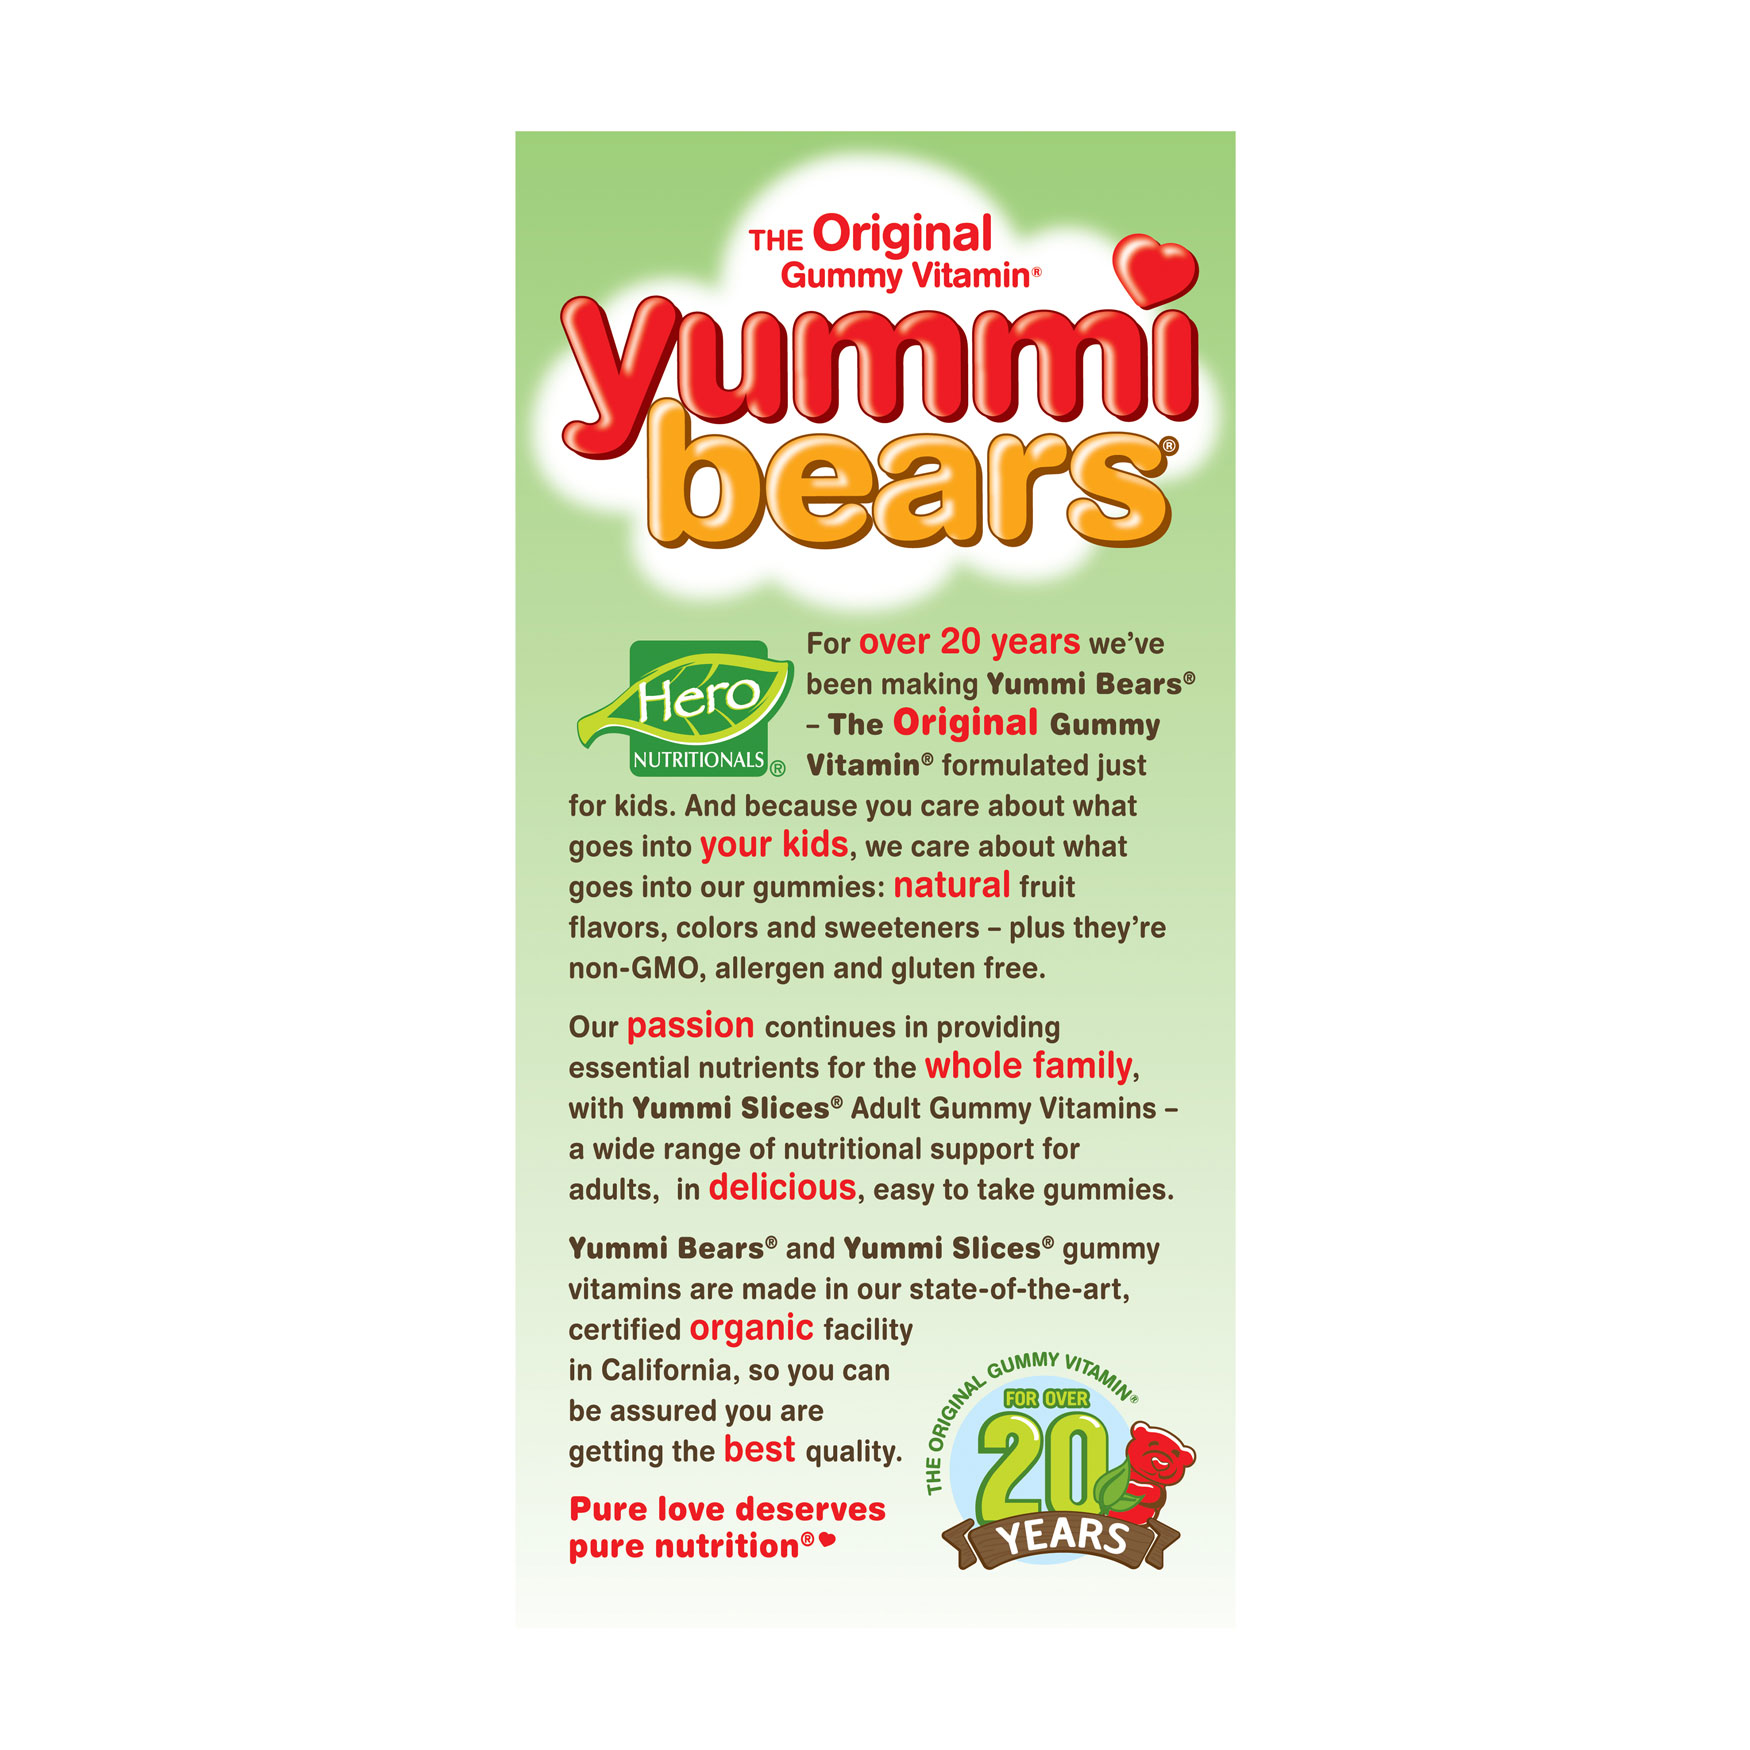 Yummi Bears- Complete Multi